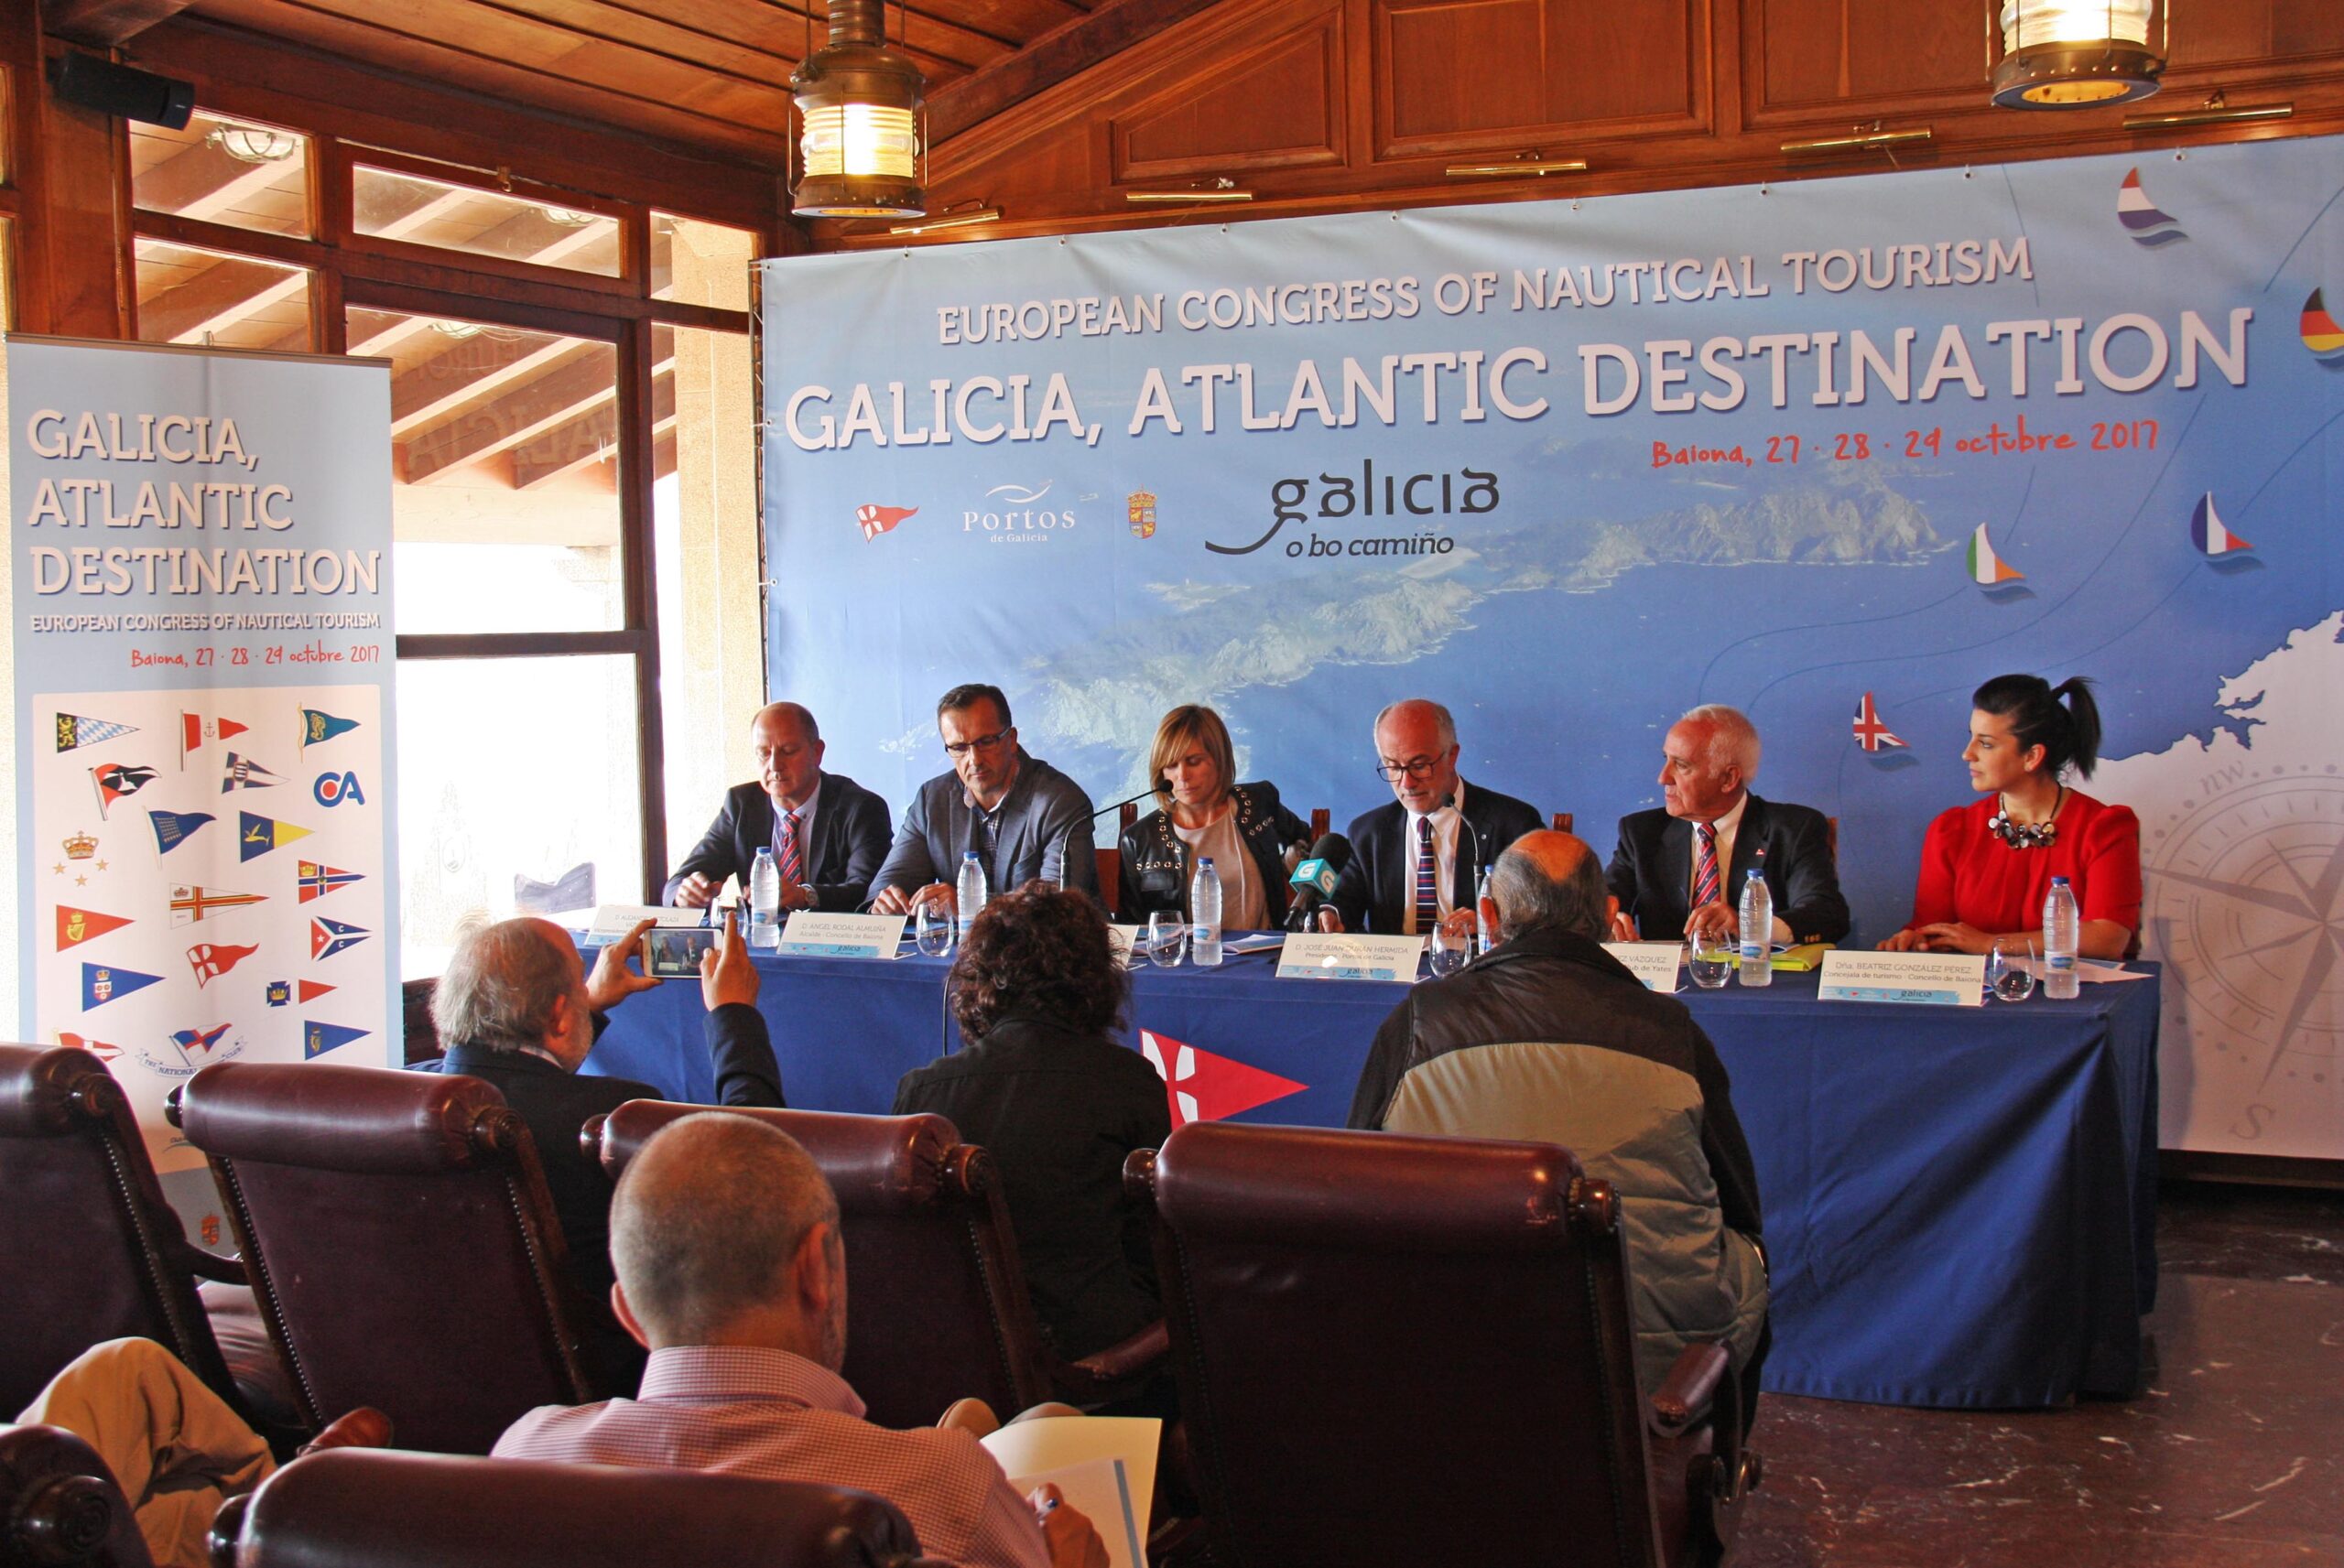 Presentación oficial del Galicia Atlantic Destination en el Monte Real Club de Yates Foto Rosana Calvo